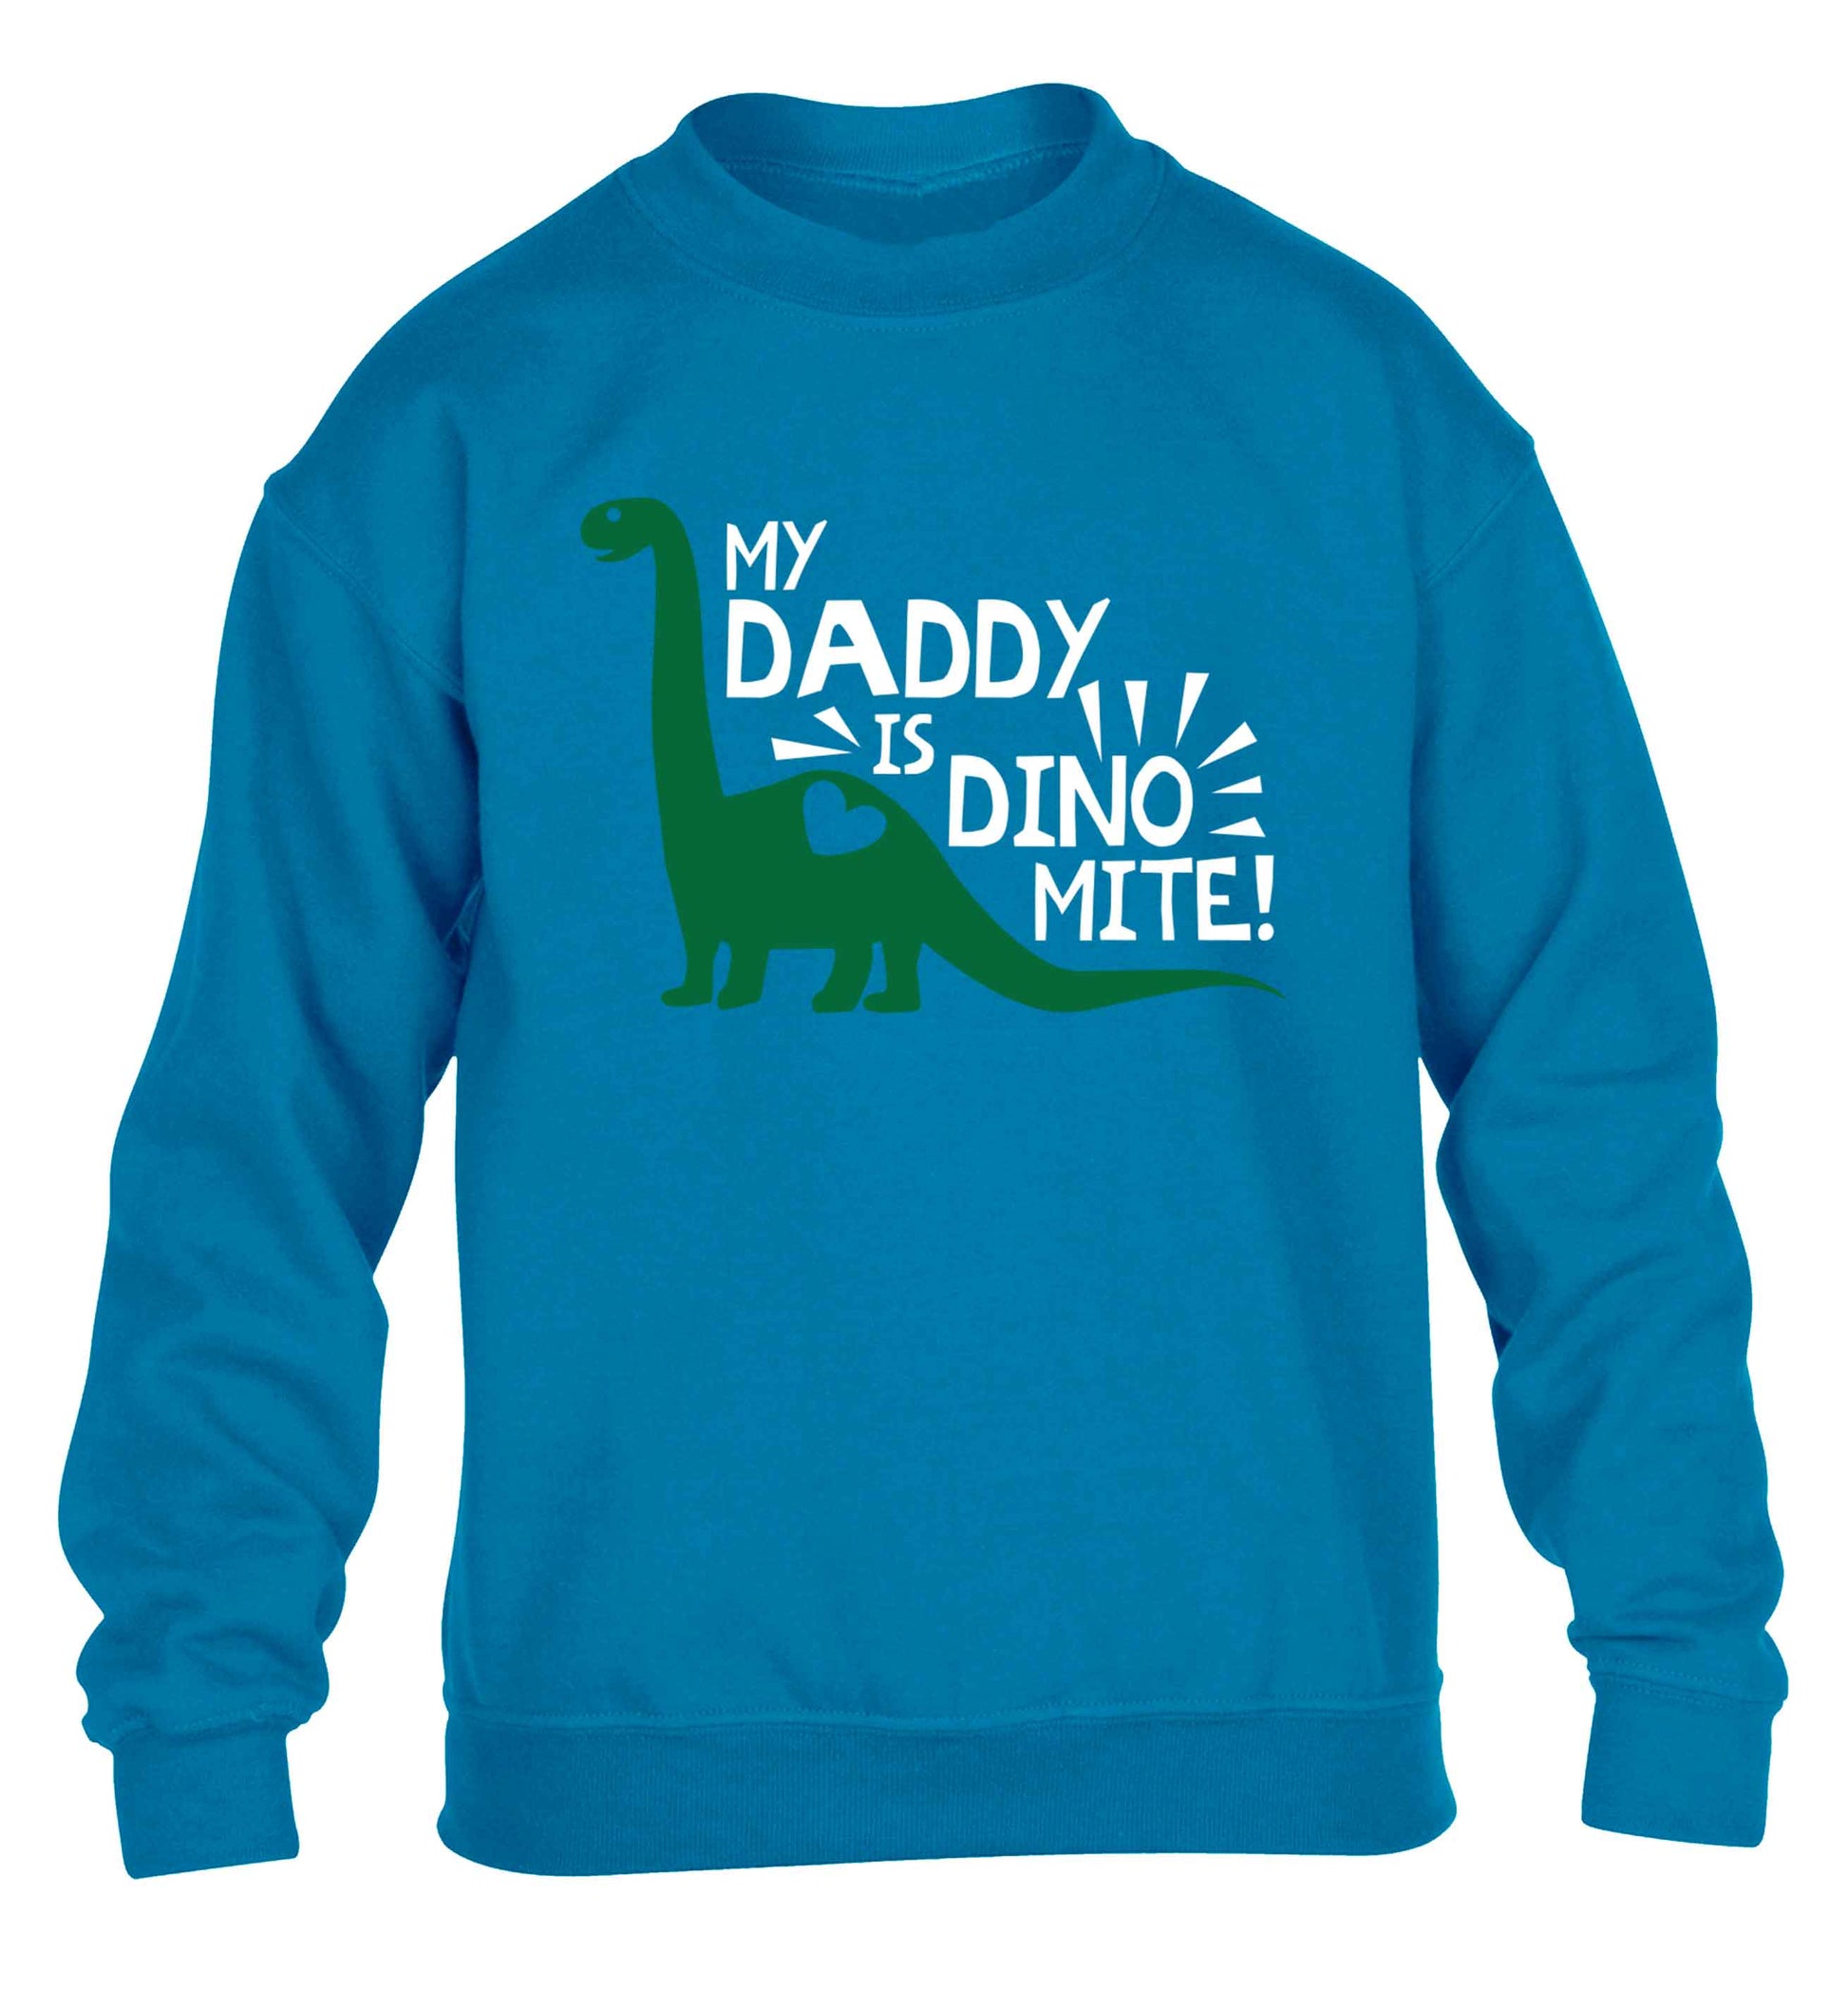 My daddy is dinomite! children's blue sweater 12-13 Years